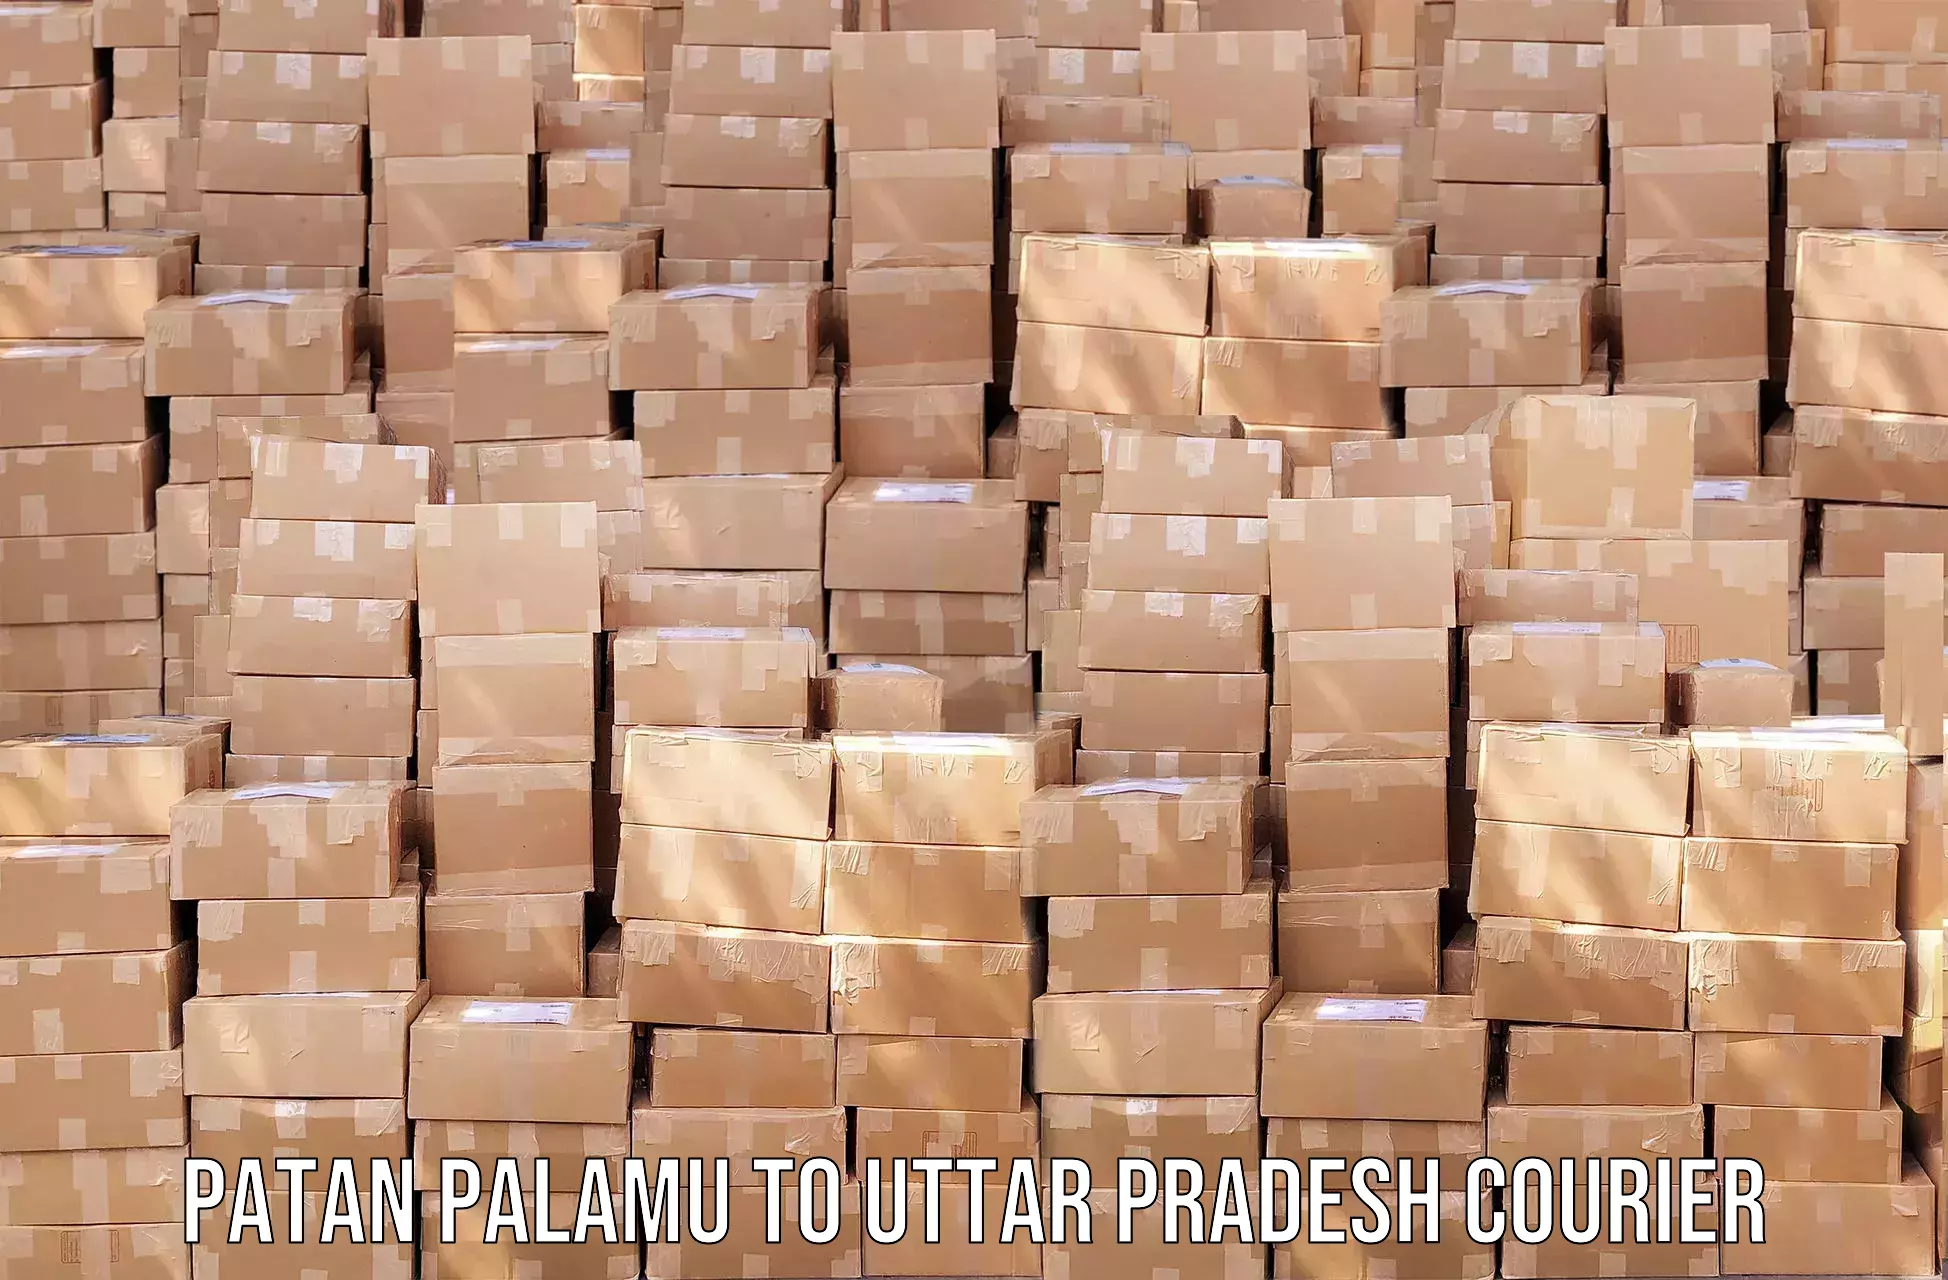 Efficient order fulfillment Patan Palamu to Tundla